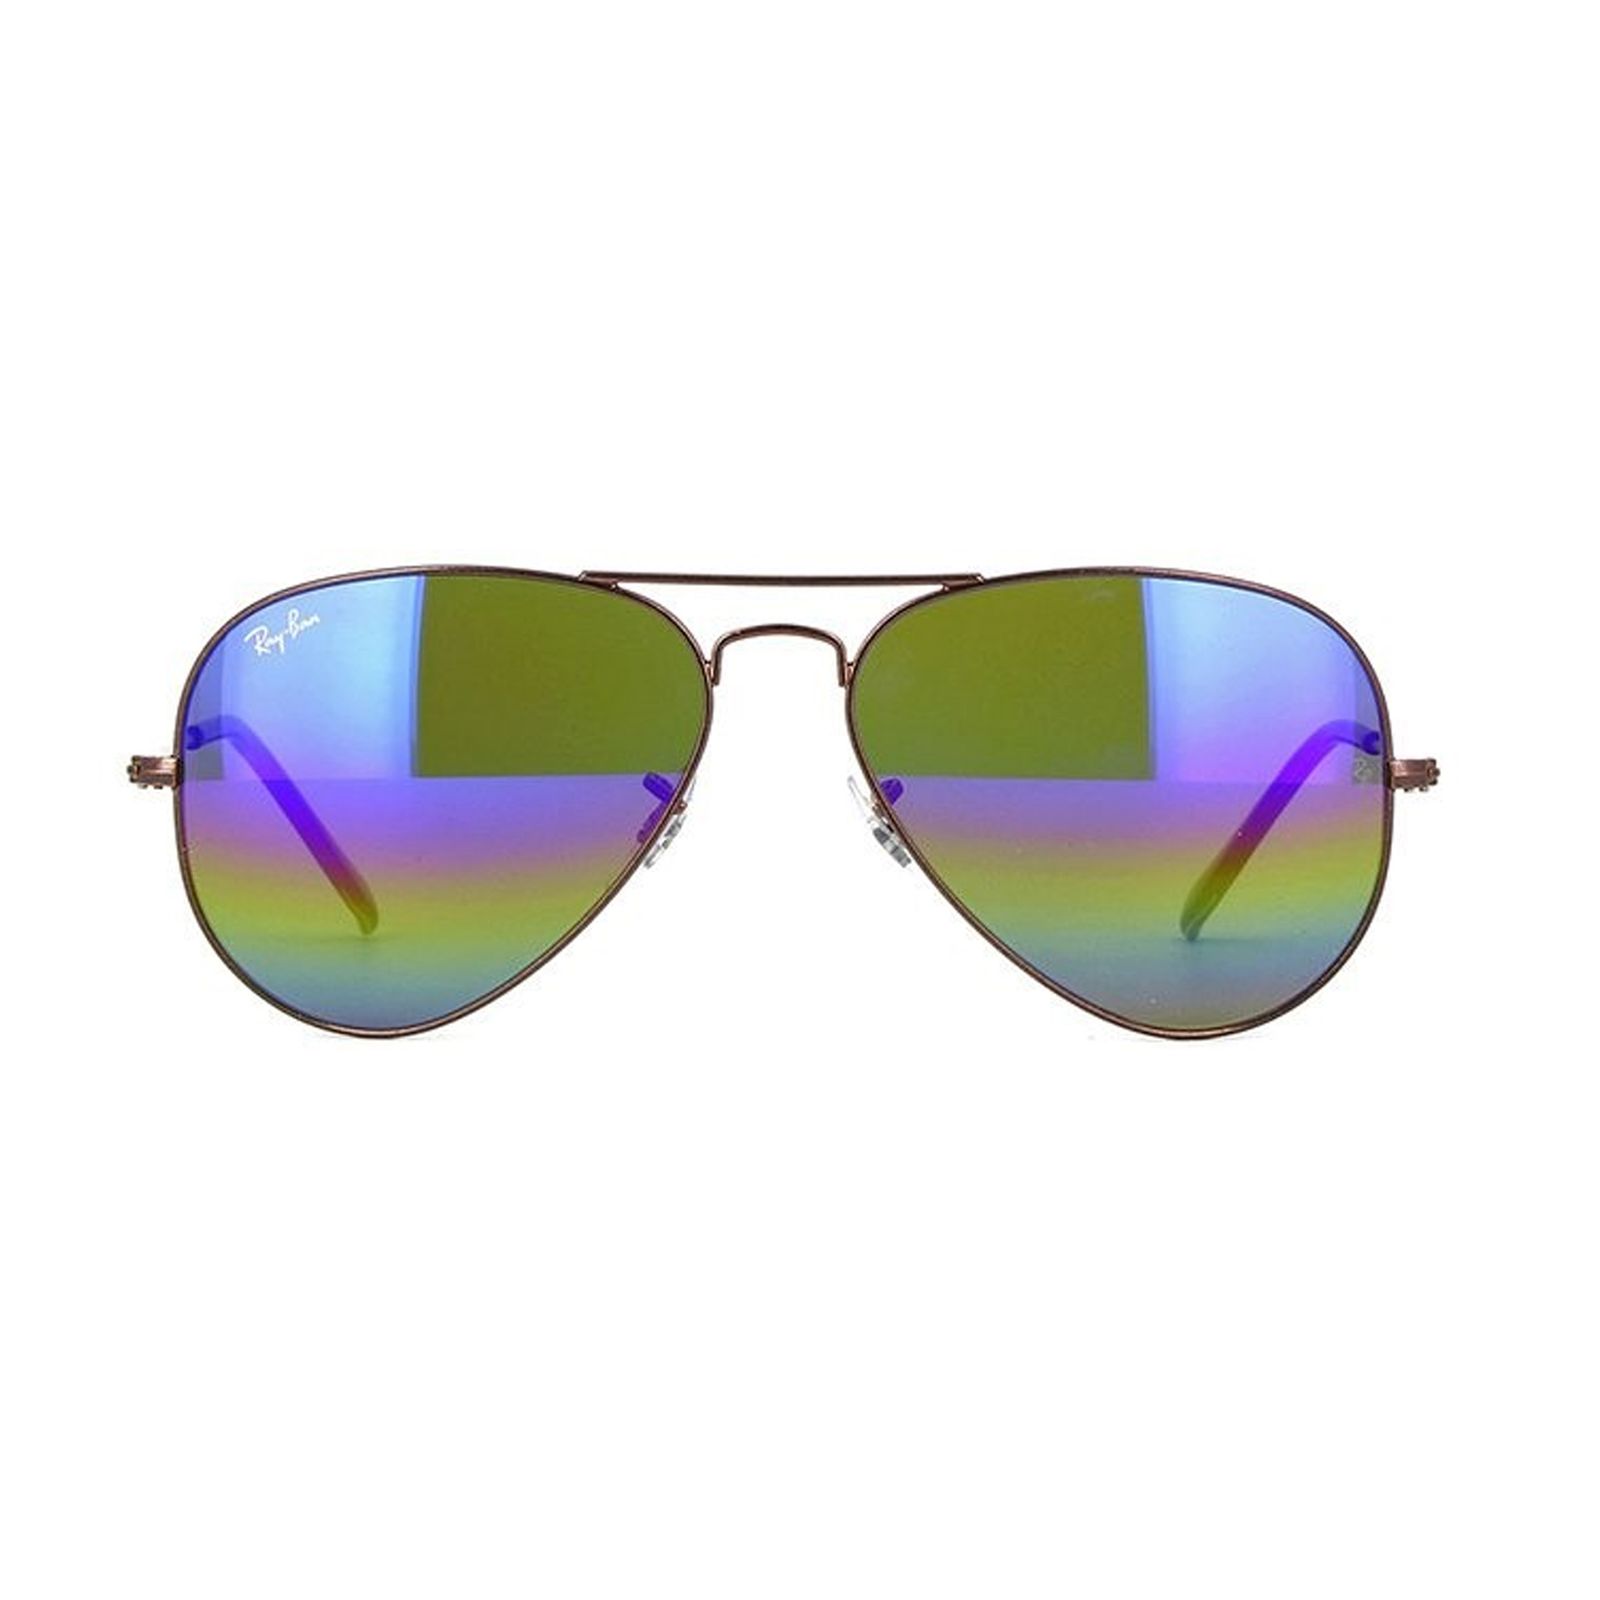 عینک آفتابی ری بن مدل 3025-9019/C2-58 -  - 1